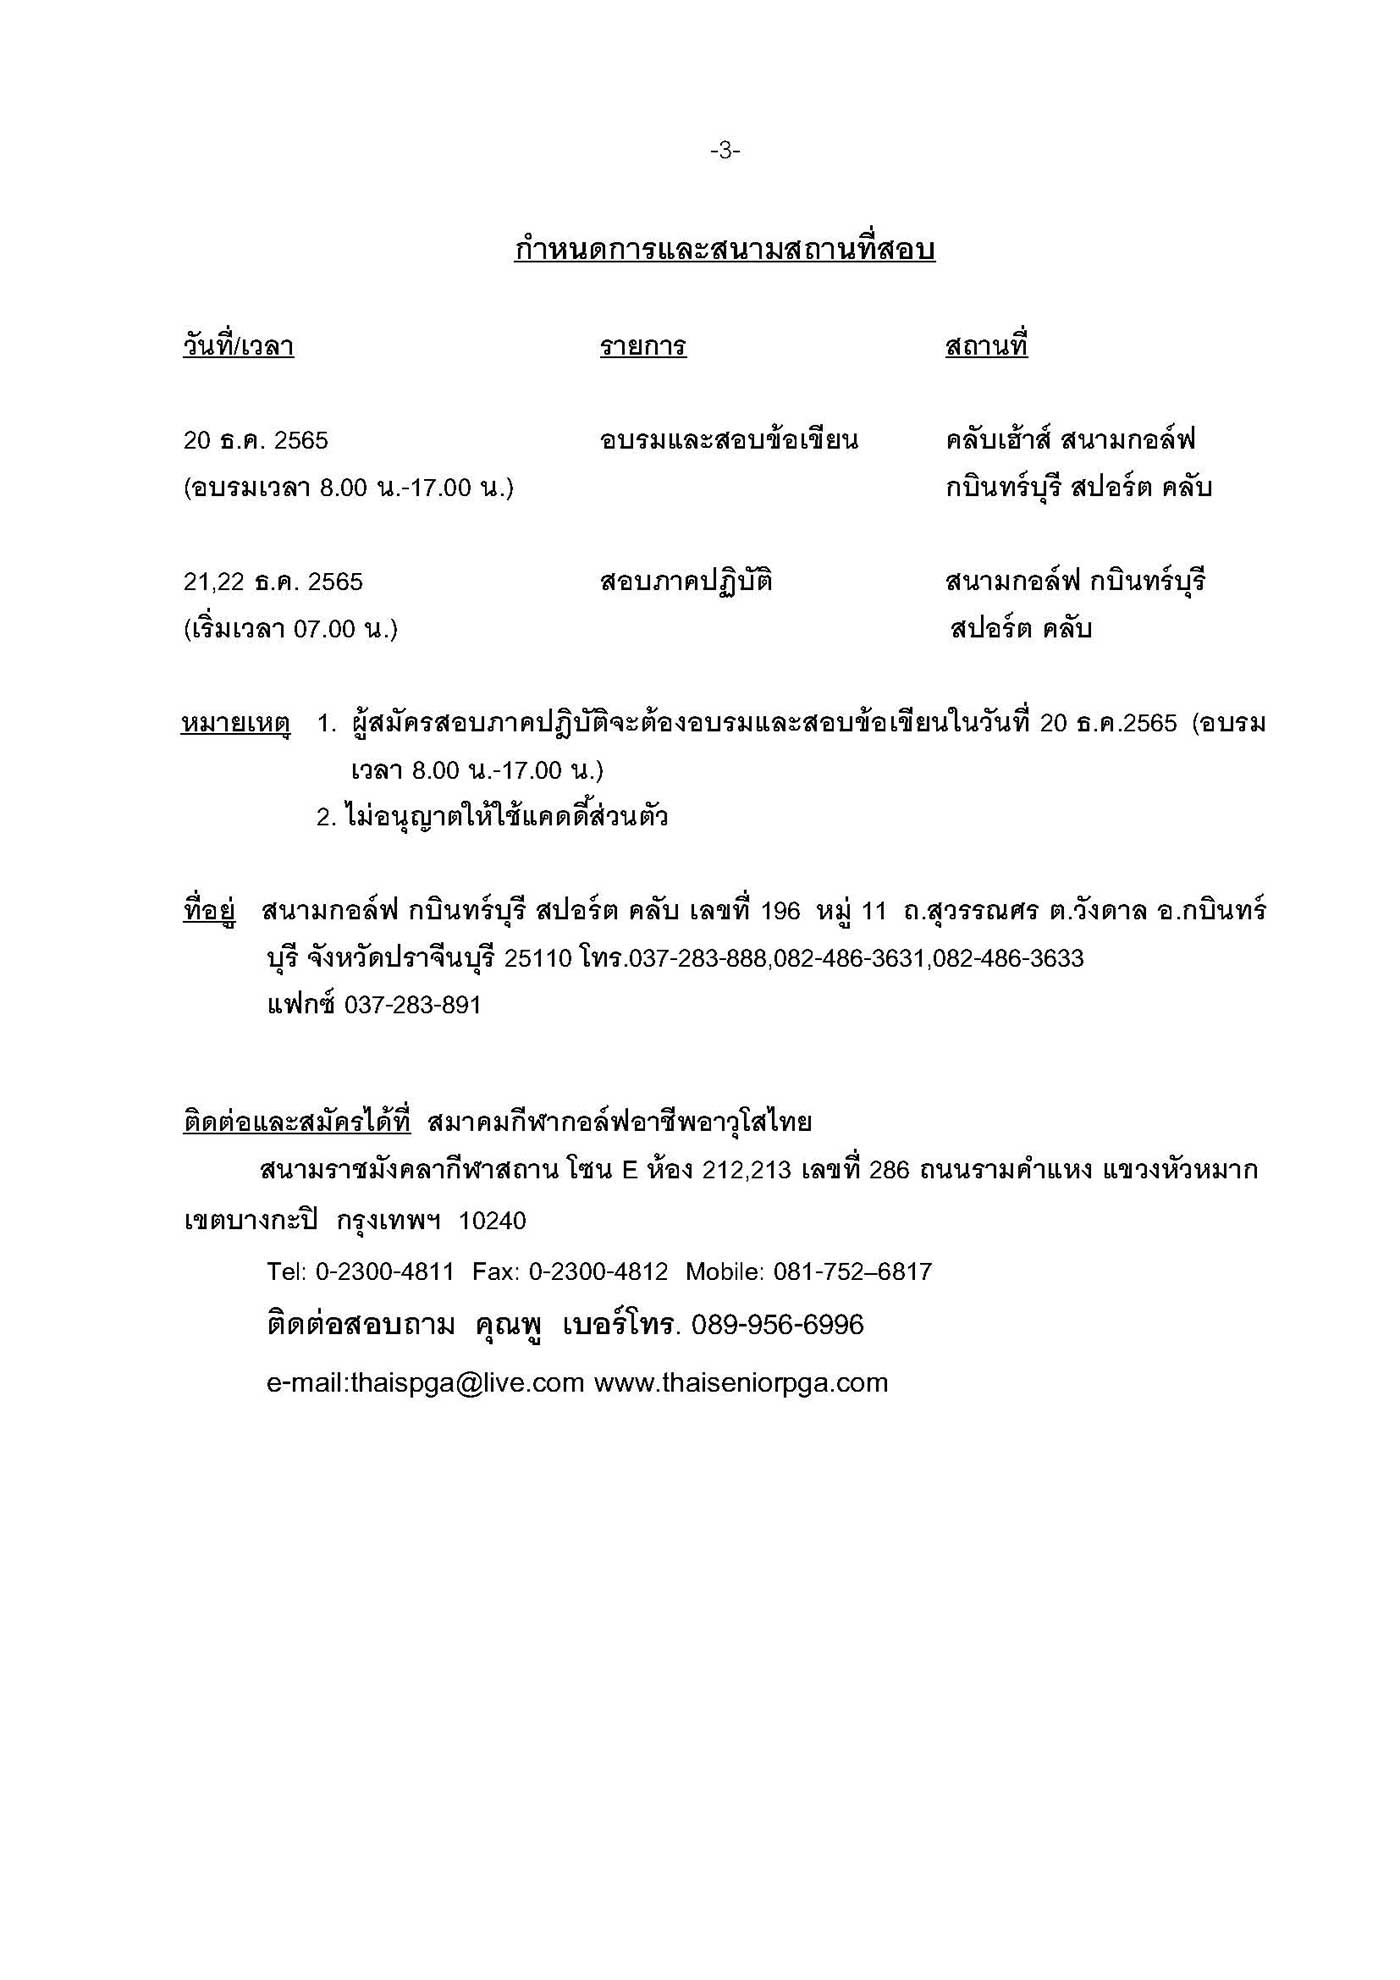 หนงสอสอบเปนภาษาไทย กบนทรบร Page 3